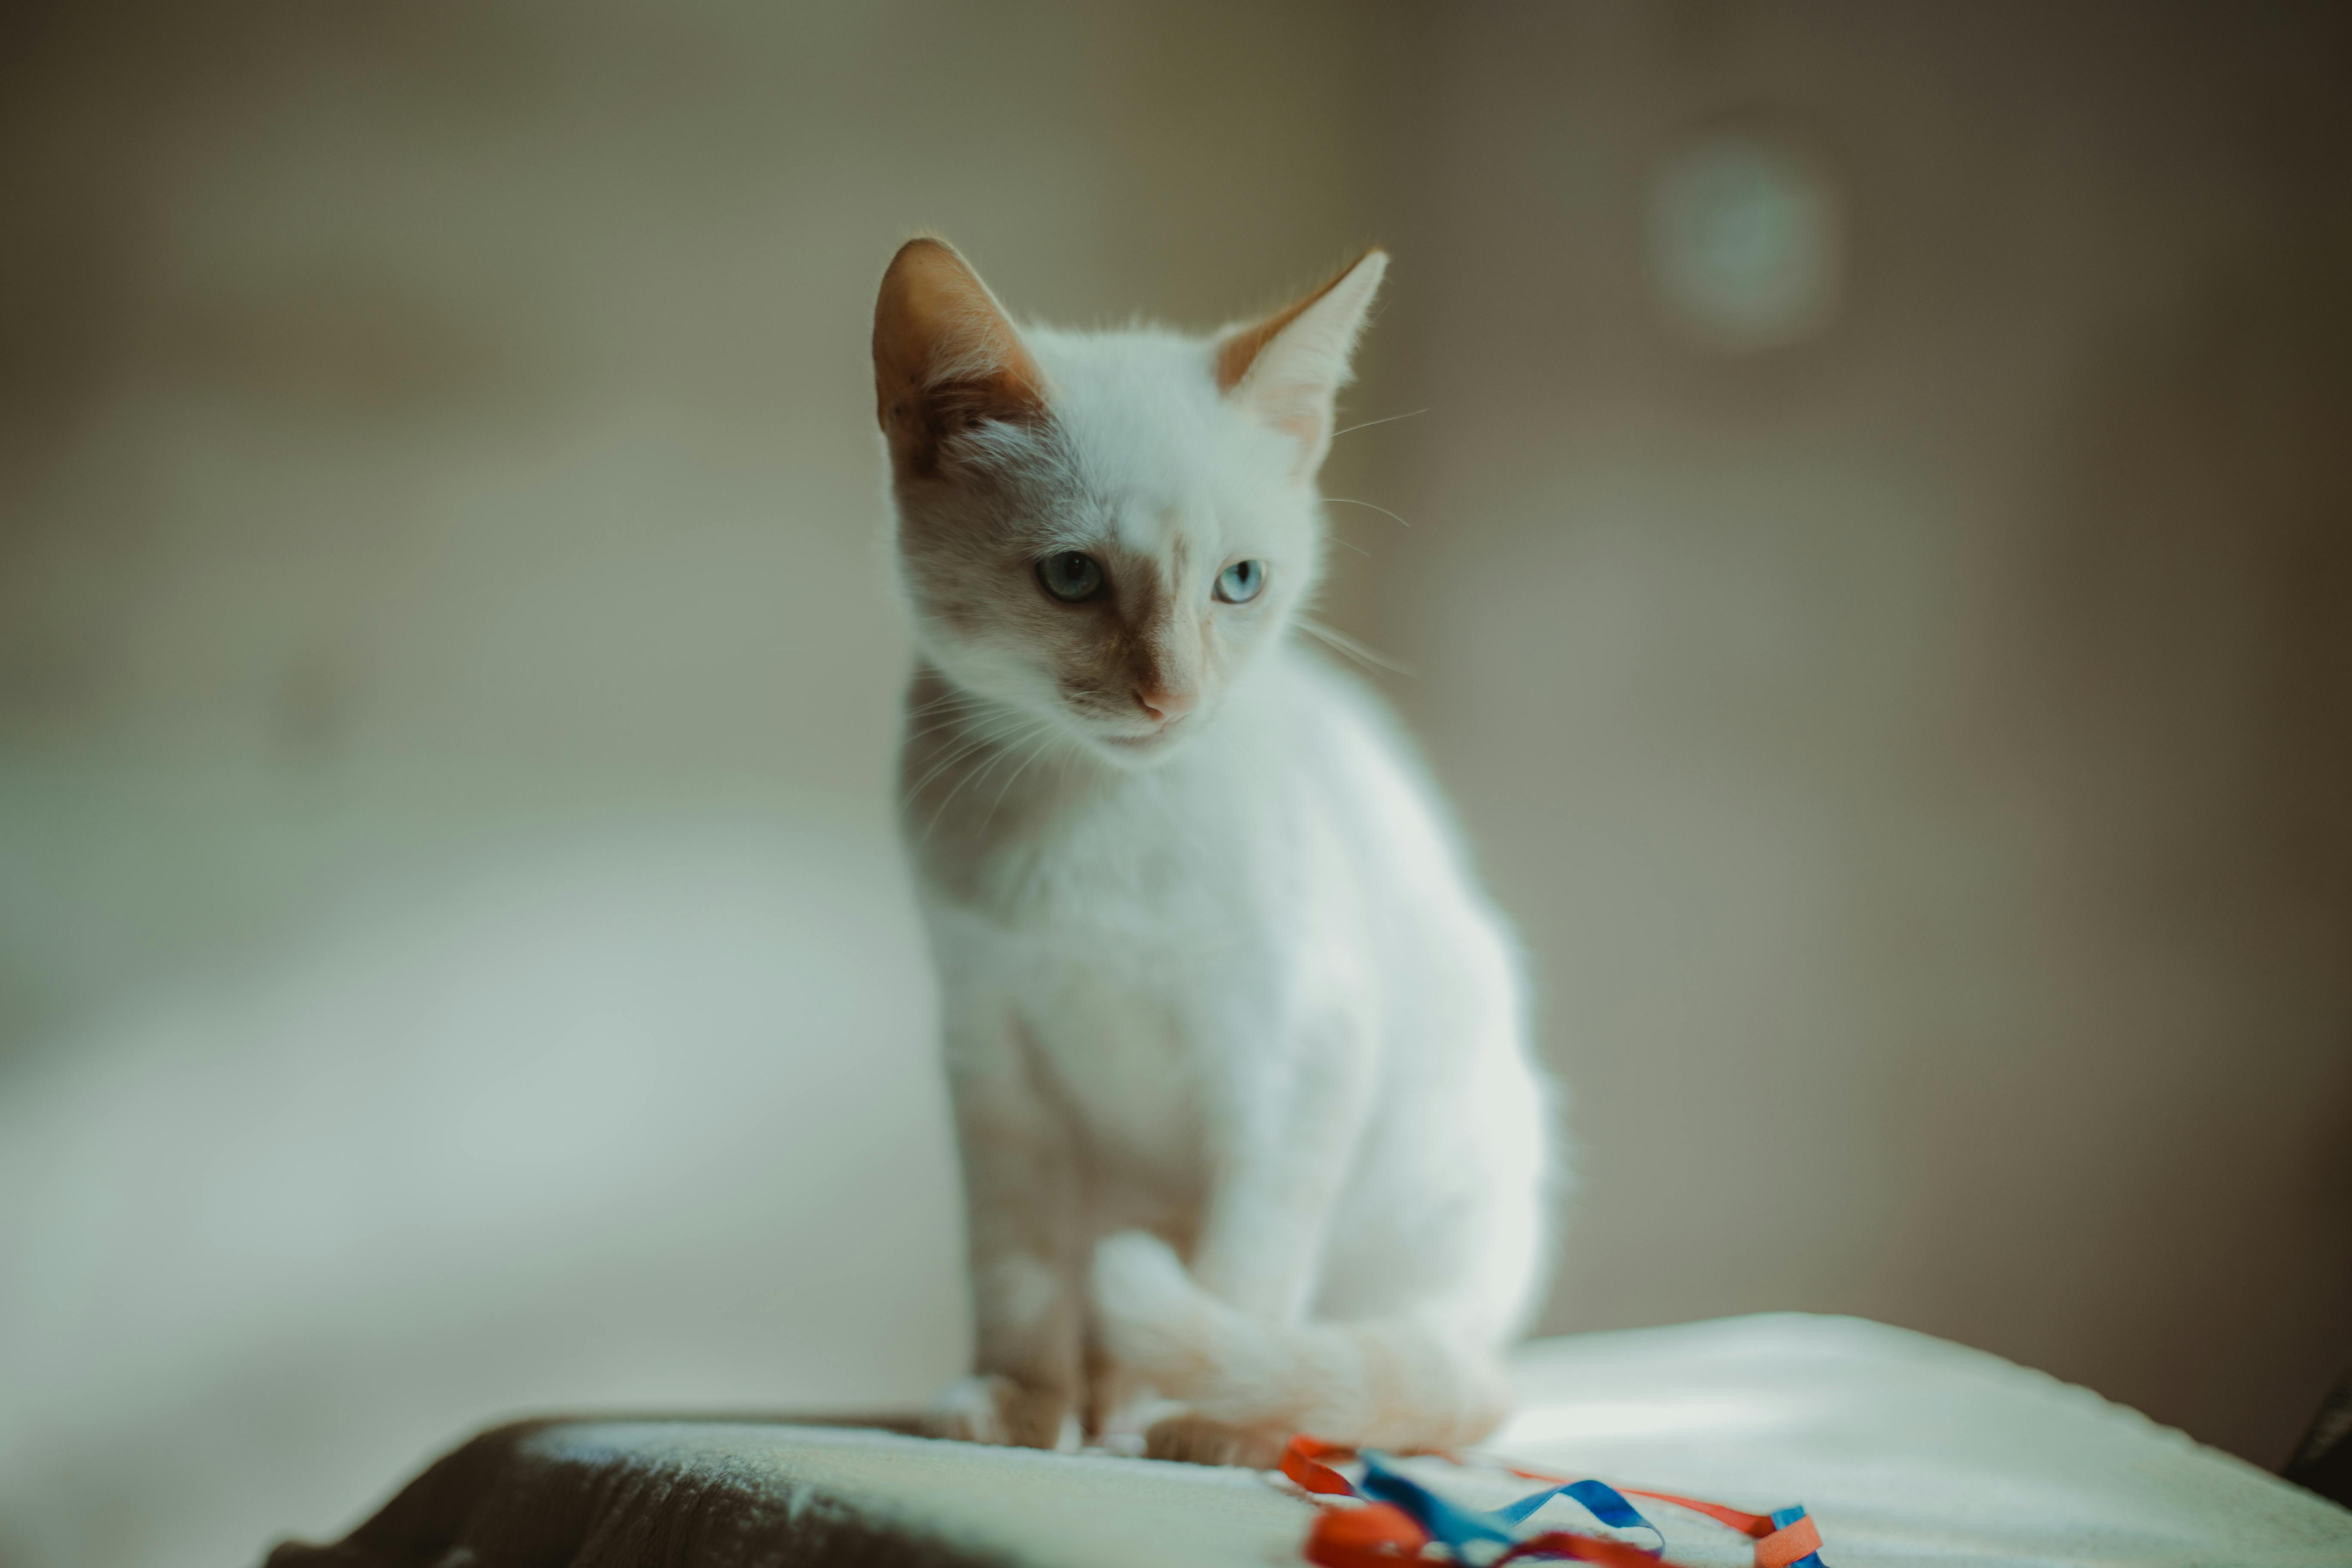 Bạn yêu thích loài mèo không? Đây là một chú mèo trắng xinh đẹp! Nhìn vào bức ảnh, bạn sẽ bị cuốn hút bởi vẻ đẹp trong trắng của chú mèo nhỏ này.